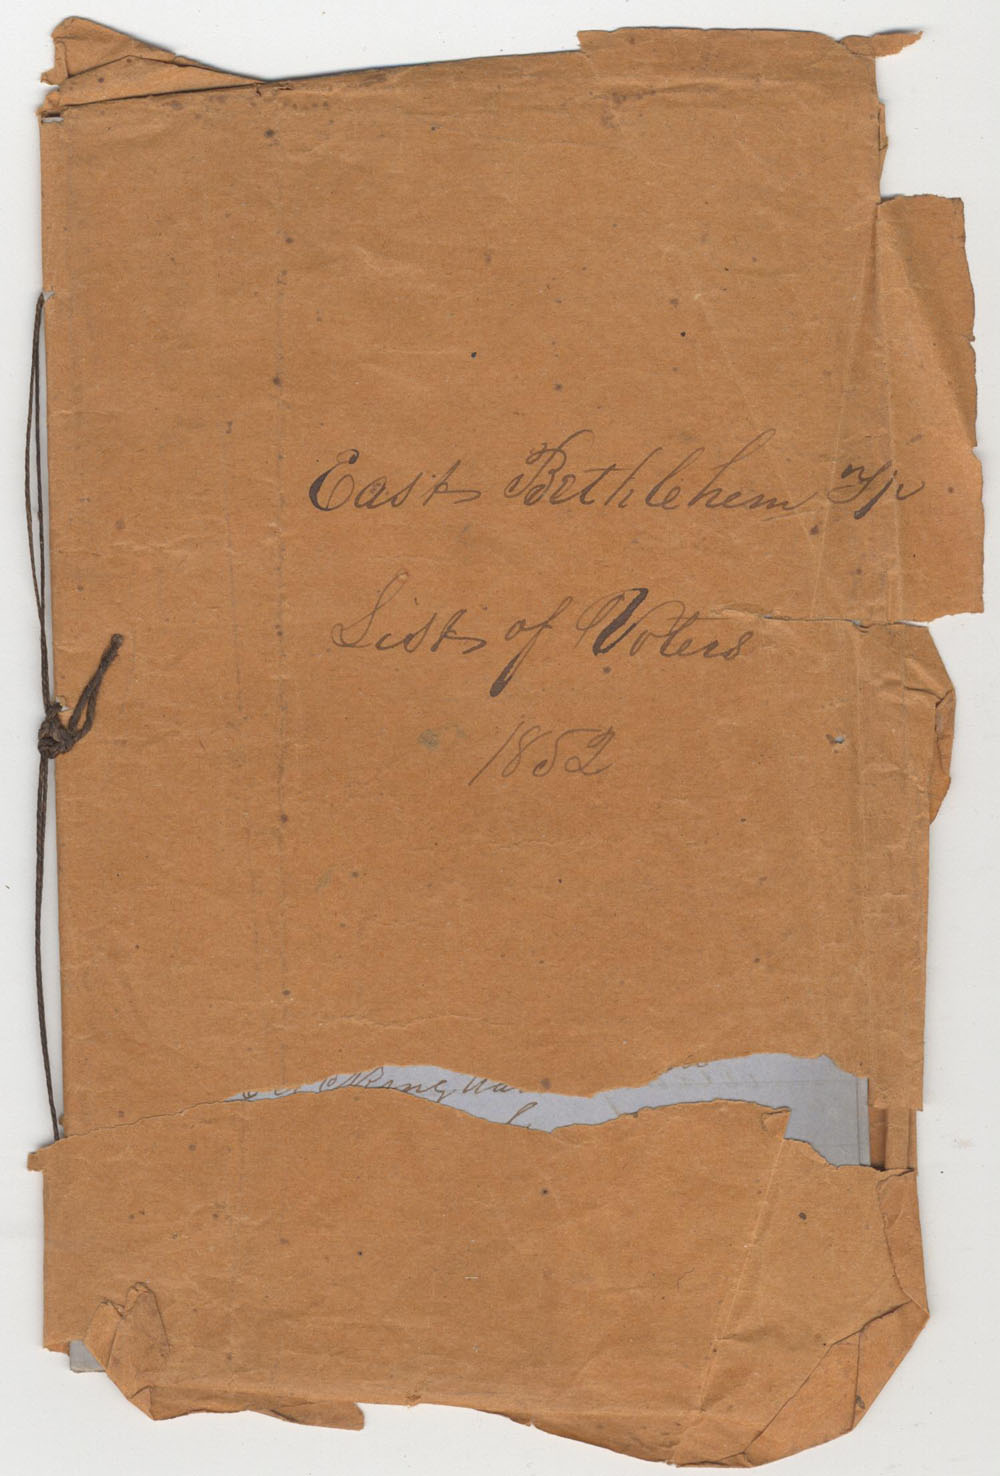 1852 East Bethlehem Twp list of voters